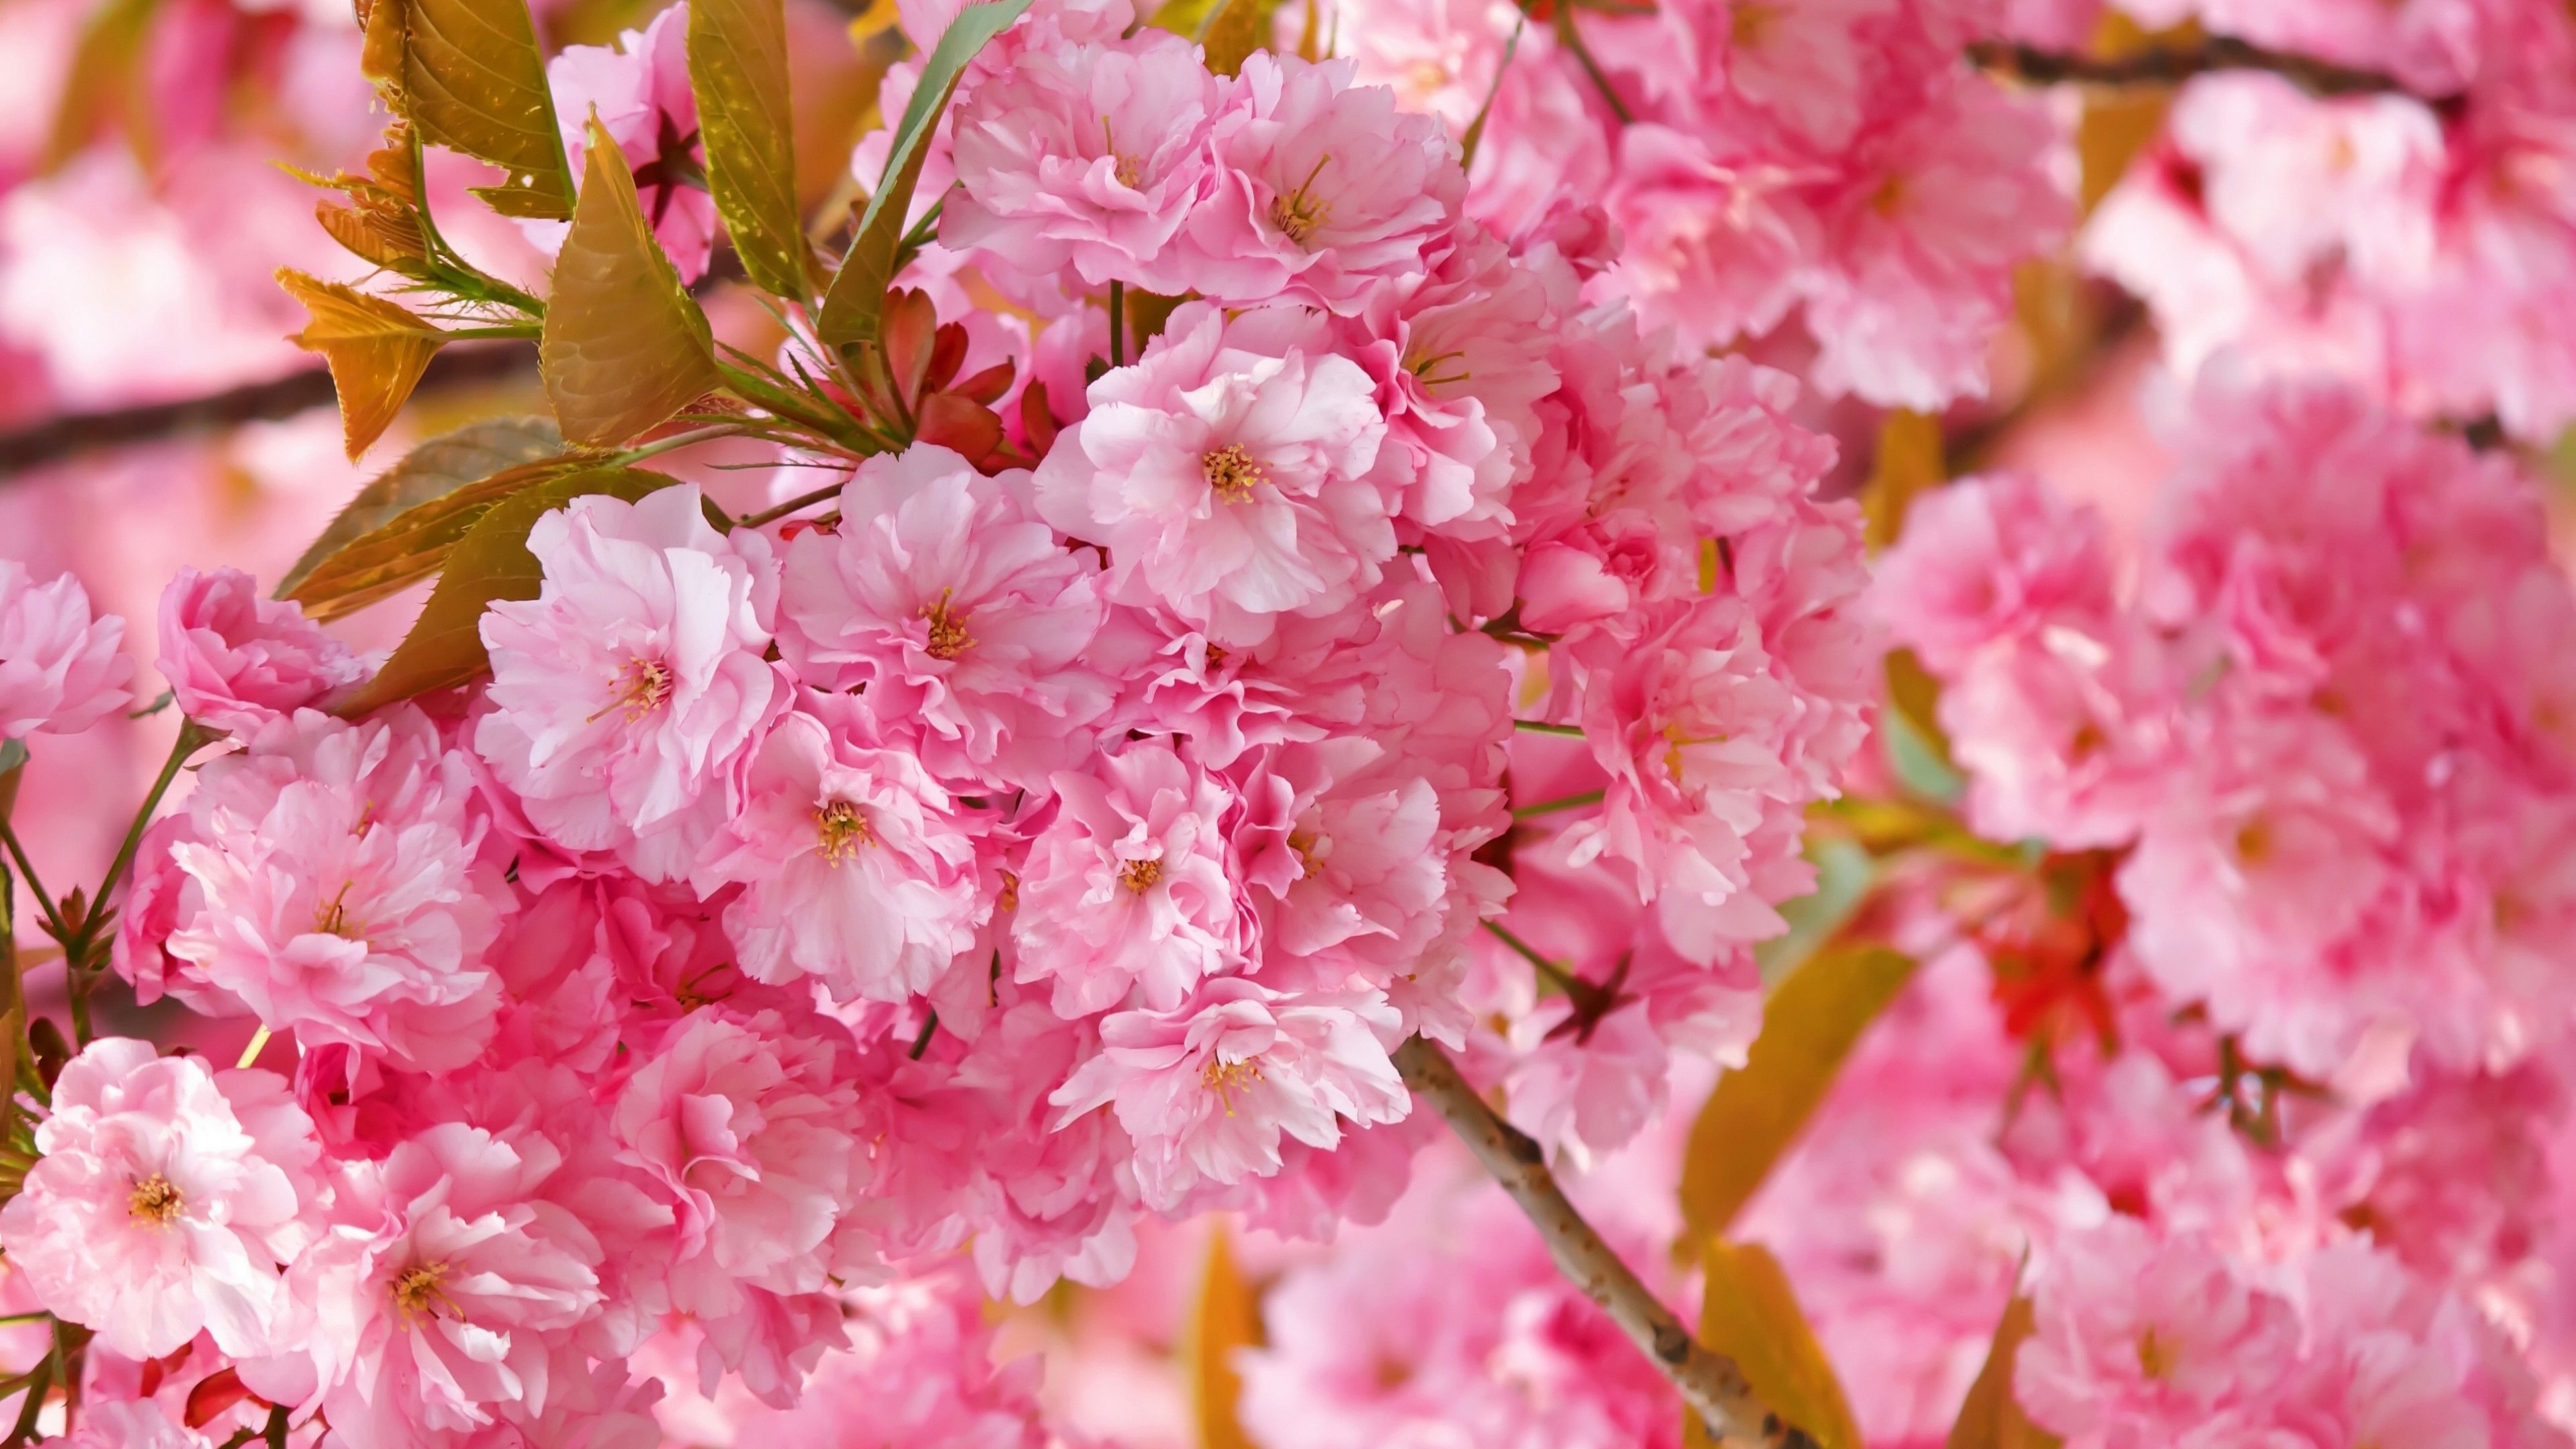 والپیپر شکوفه های خاص و هنری صورتی درخت برای دسکتاپ